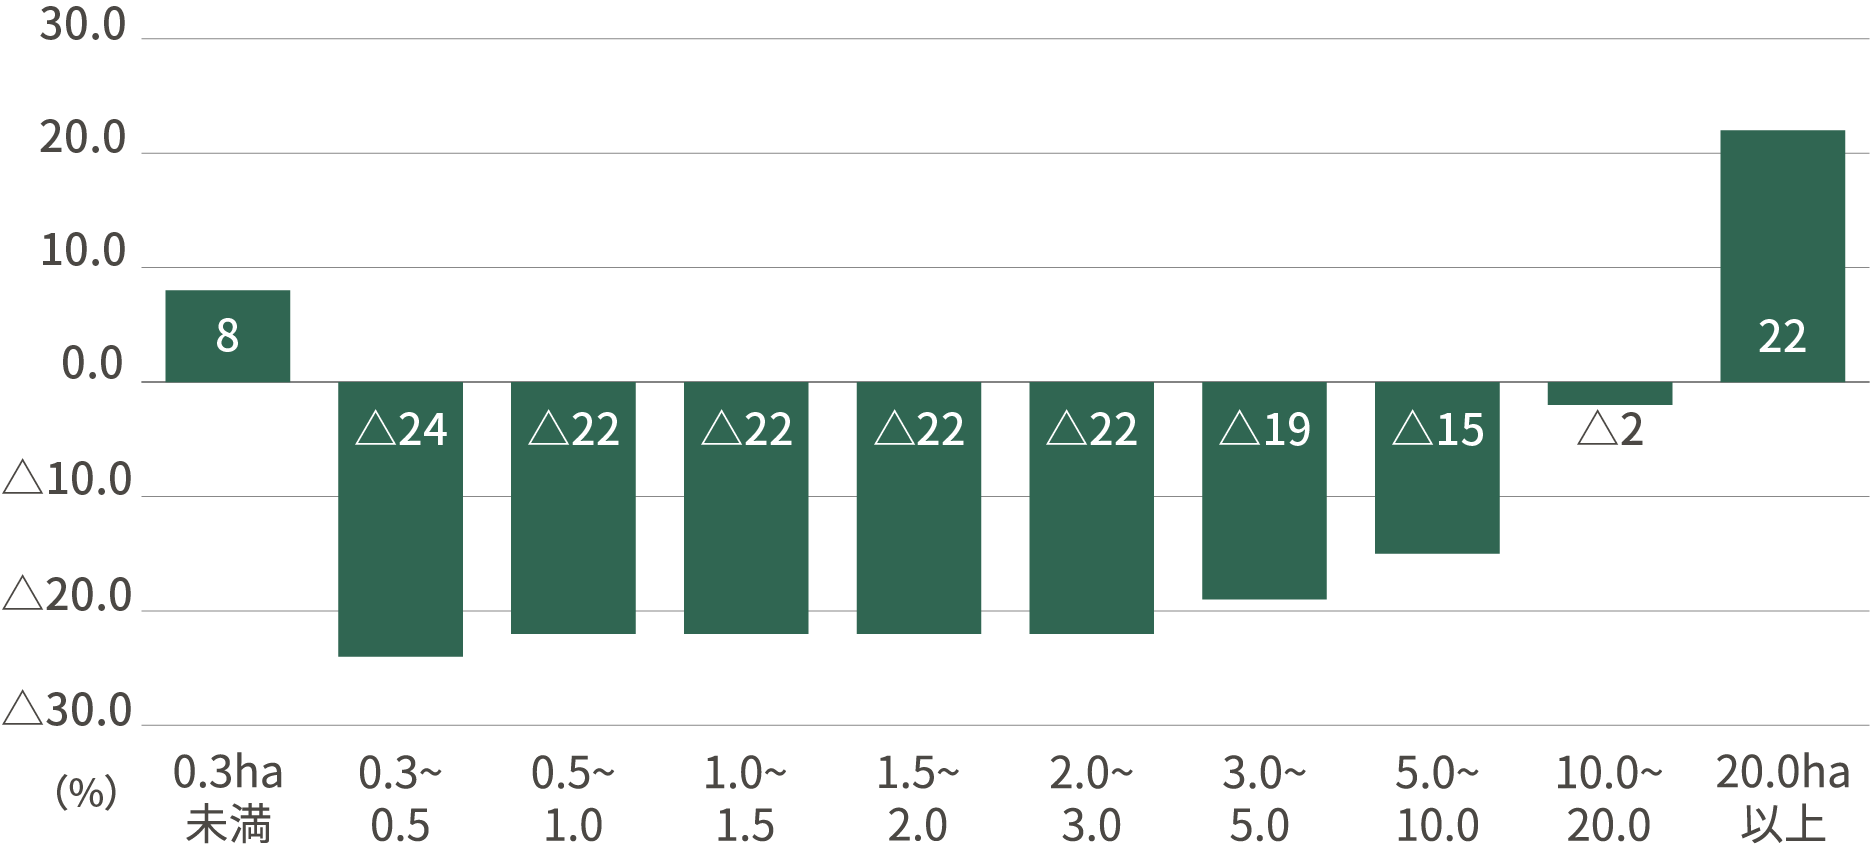 経営耕地面積規模別農業経営体数の増減率(平成27年→令和2年)